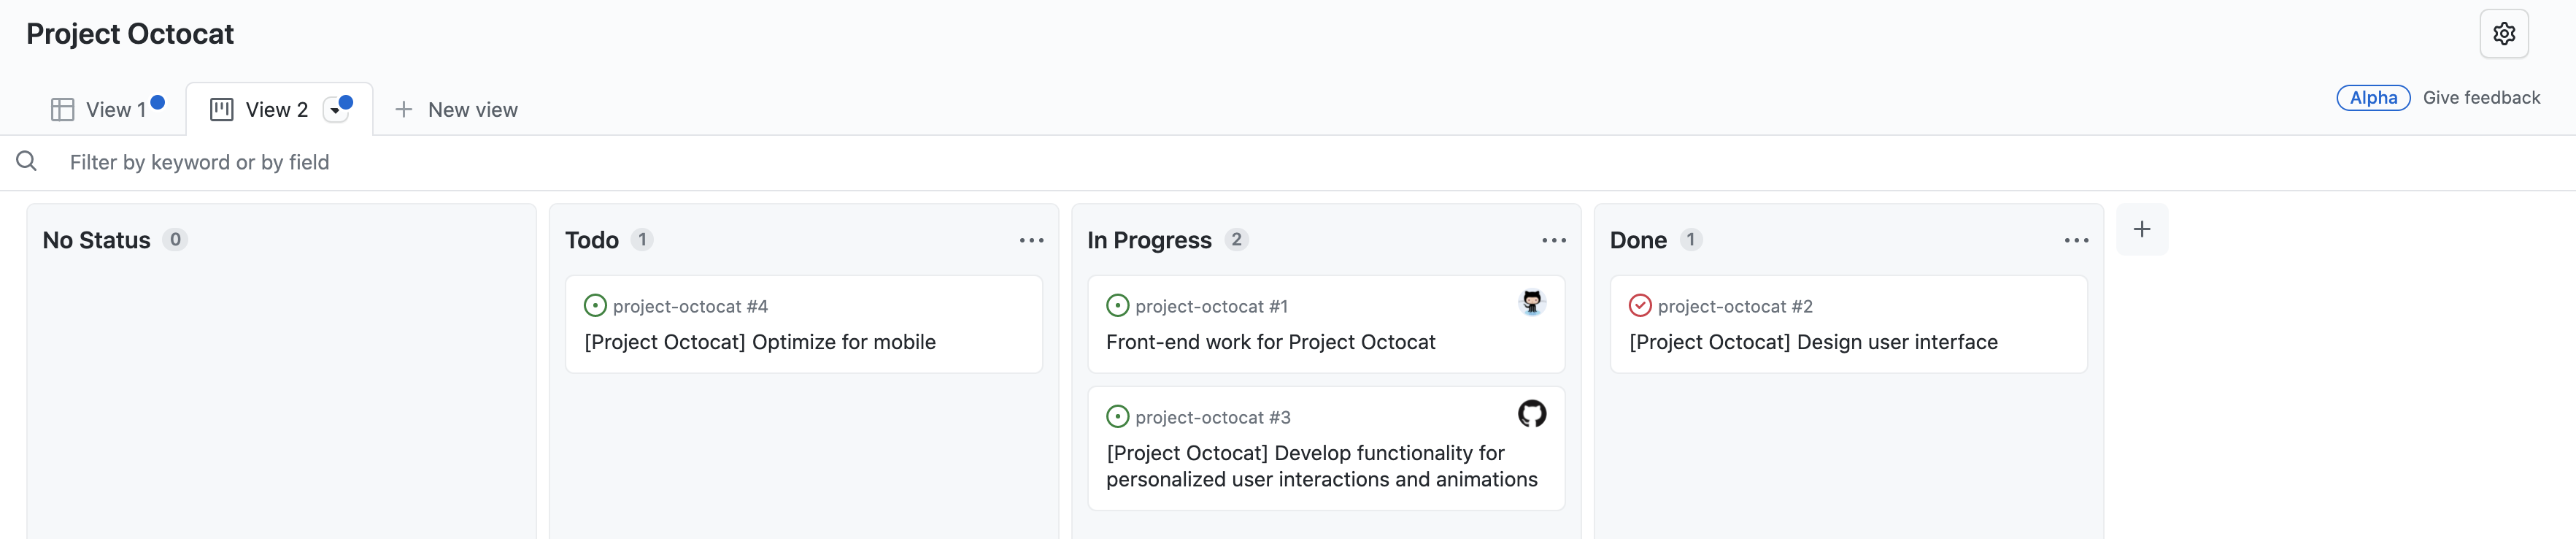 "상태 없음", "Todo", "진행 중" 및 "완료"에 대한 열로 구성된 문제가 있는 "Project Octocat" 프로젝트의 보드 보기 스크린샷